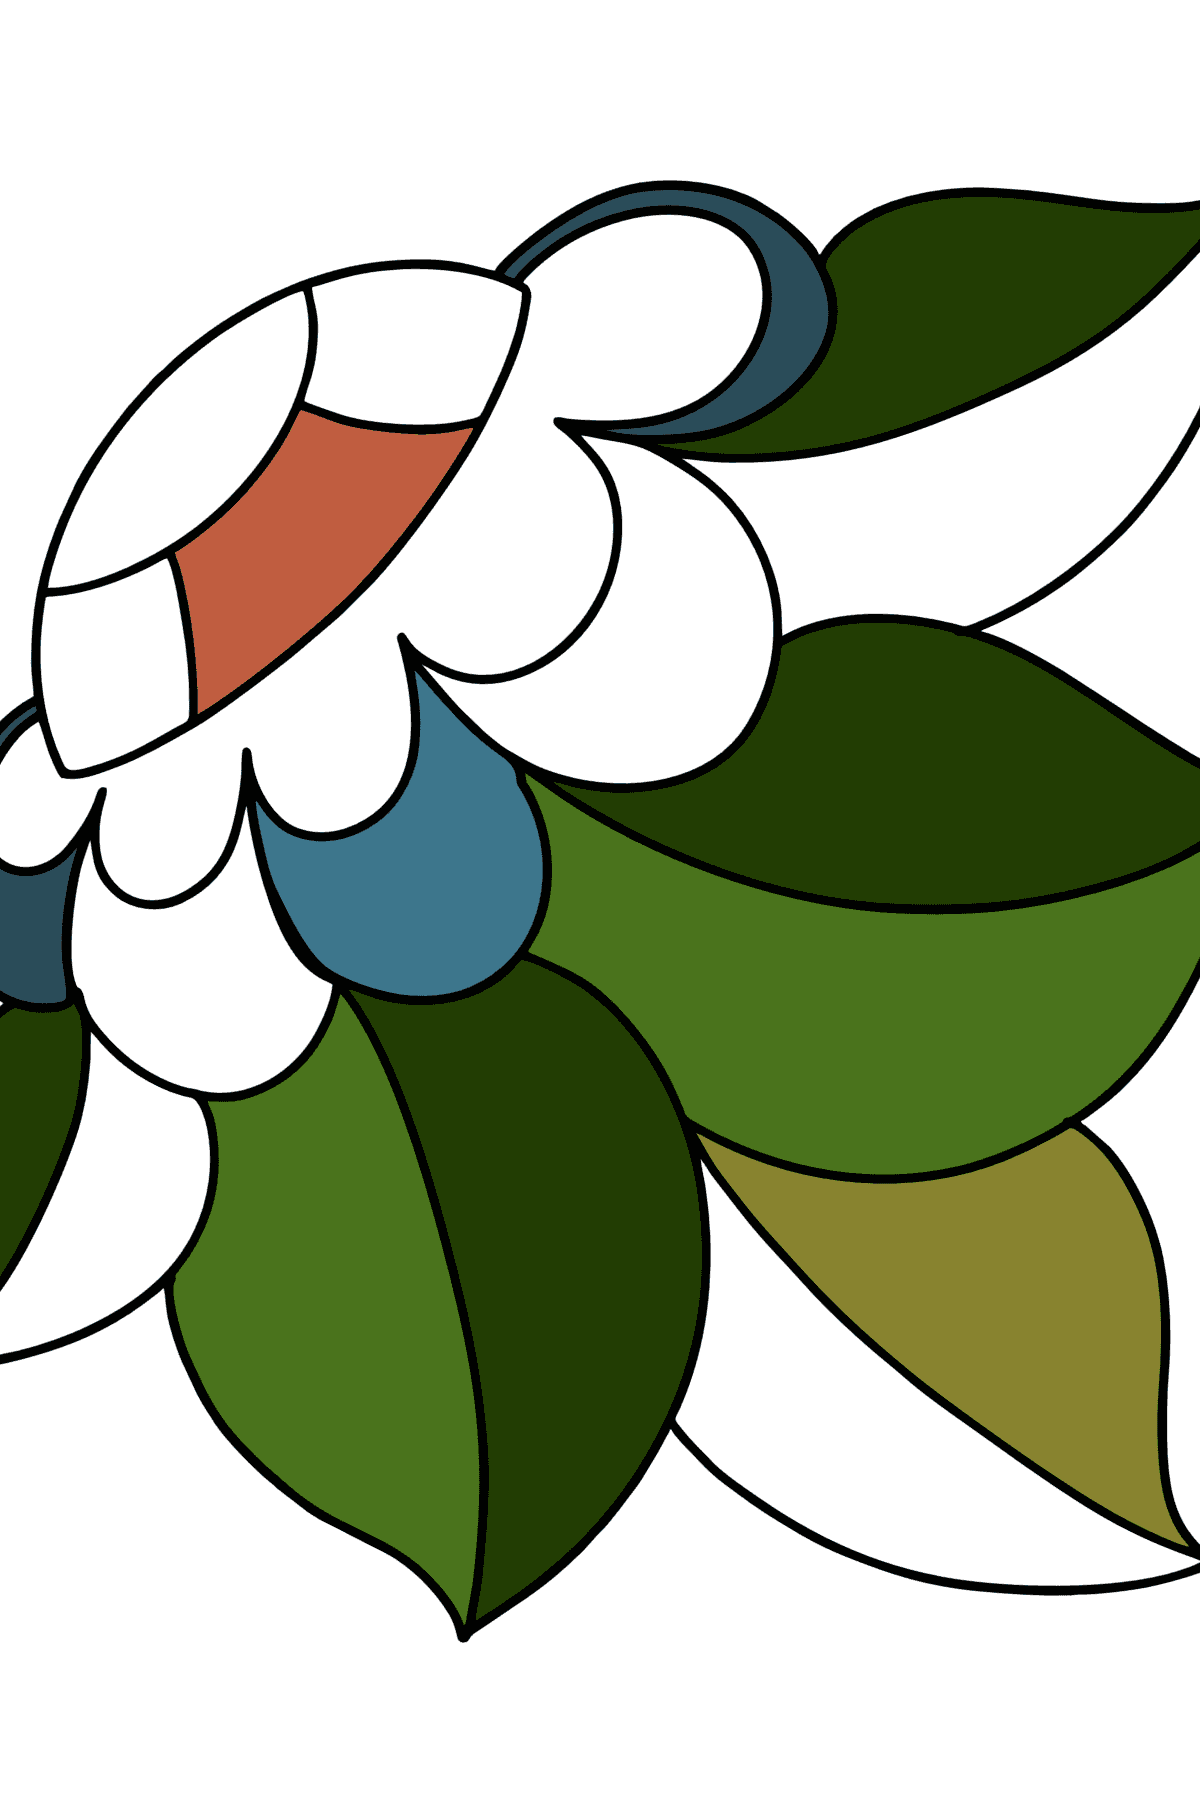 Disegni da colorare di motivi floreali Zentangle - Disegni da colorare per bambini